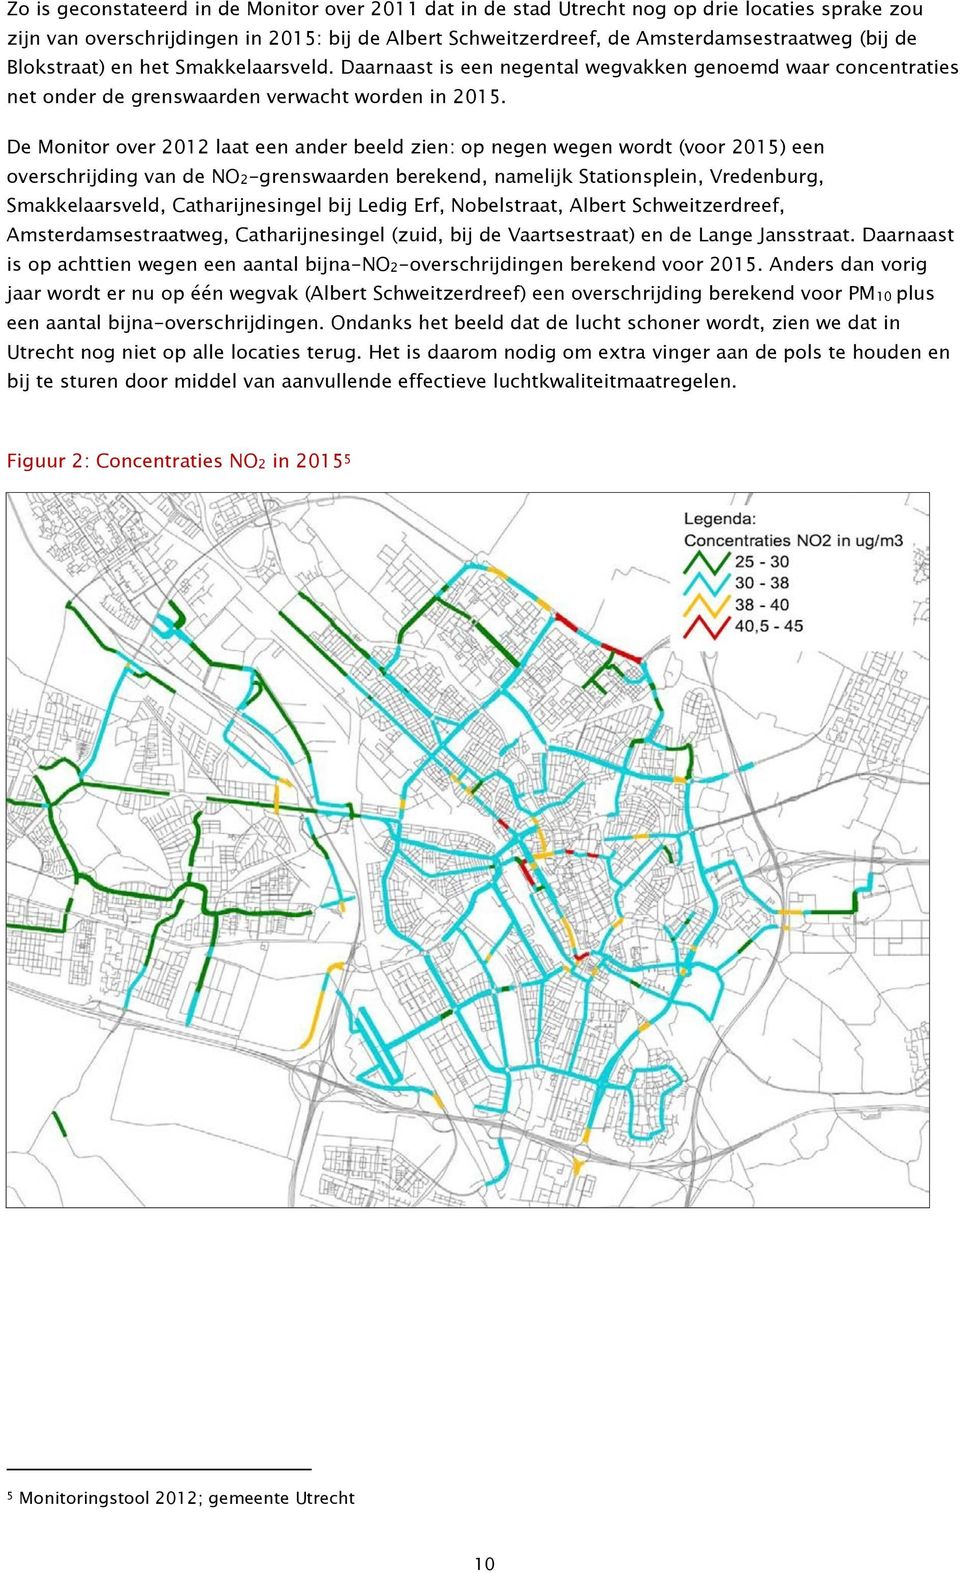 De Monitor over 2012 laat een ander beeld zien: op negen wegen wordt (voor 2015) een overschrijding van de NO2-grenswaarden berekend, namelijk Stationsplein, Vredenburg, Smakkelaarsveld,